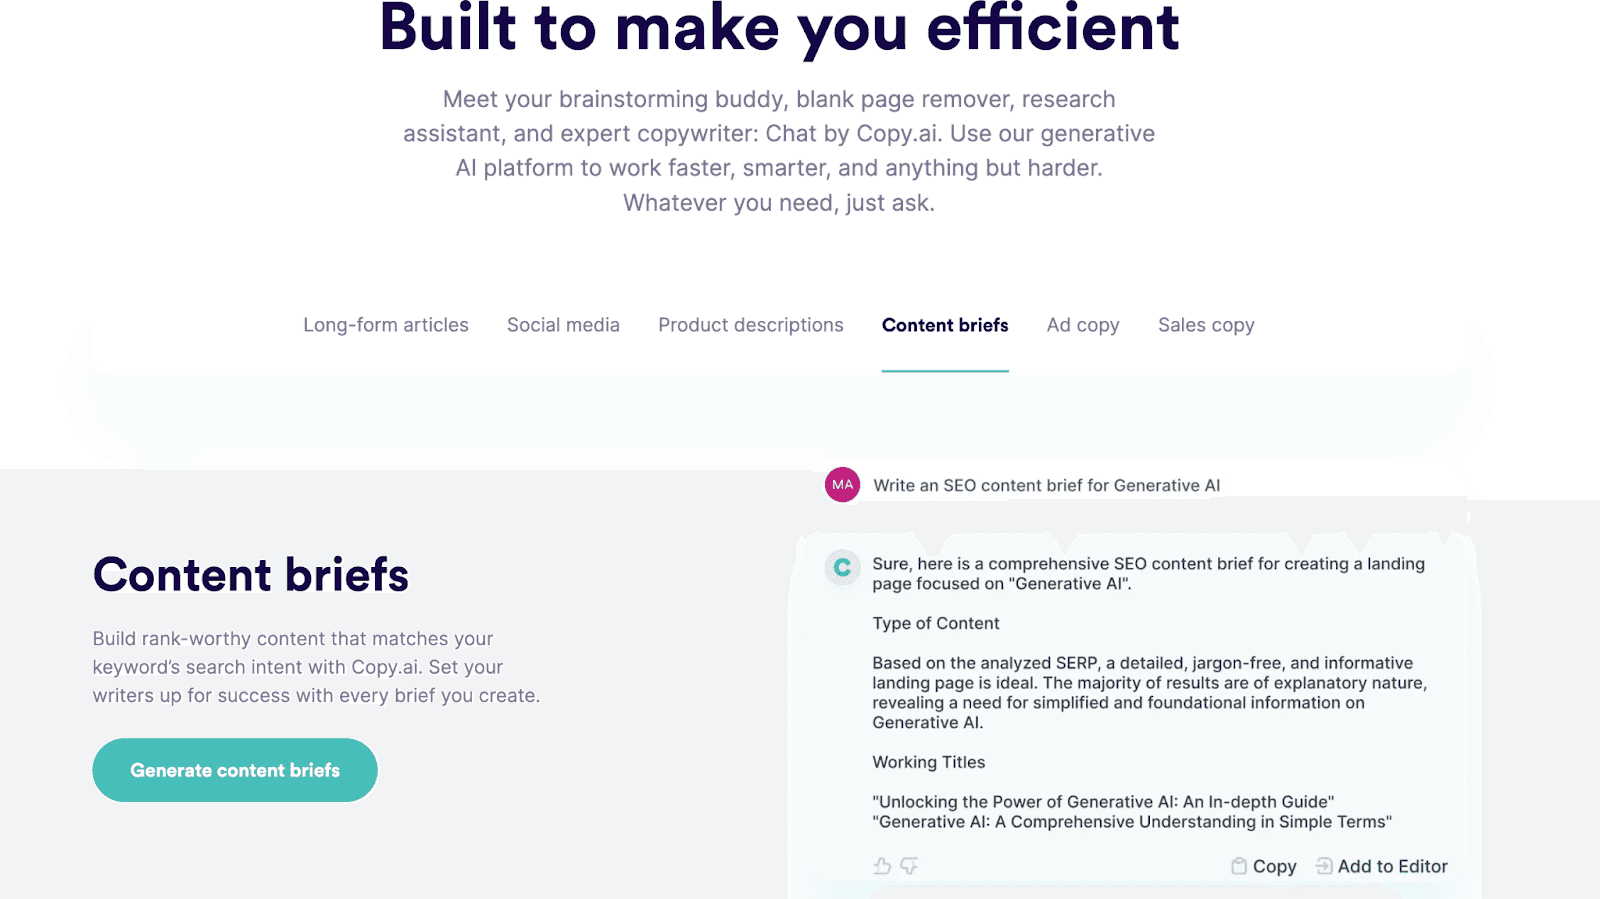 Copy.ai website - Built to make you efficient